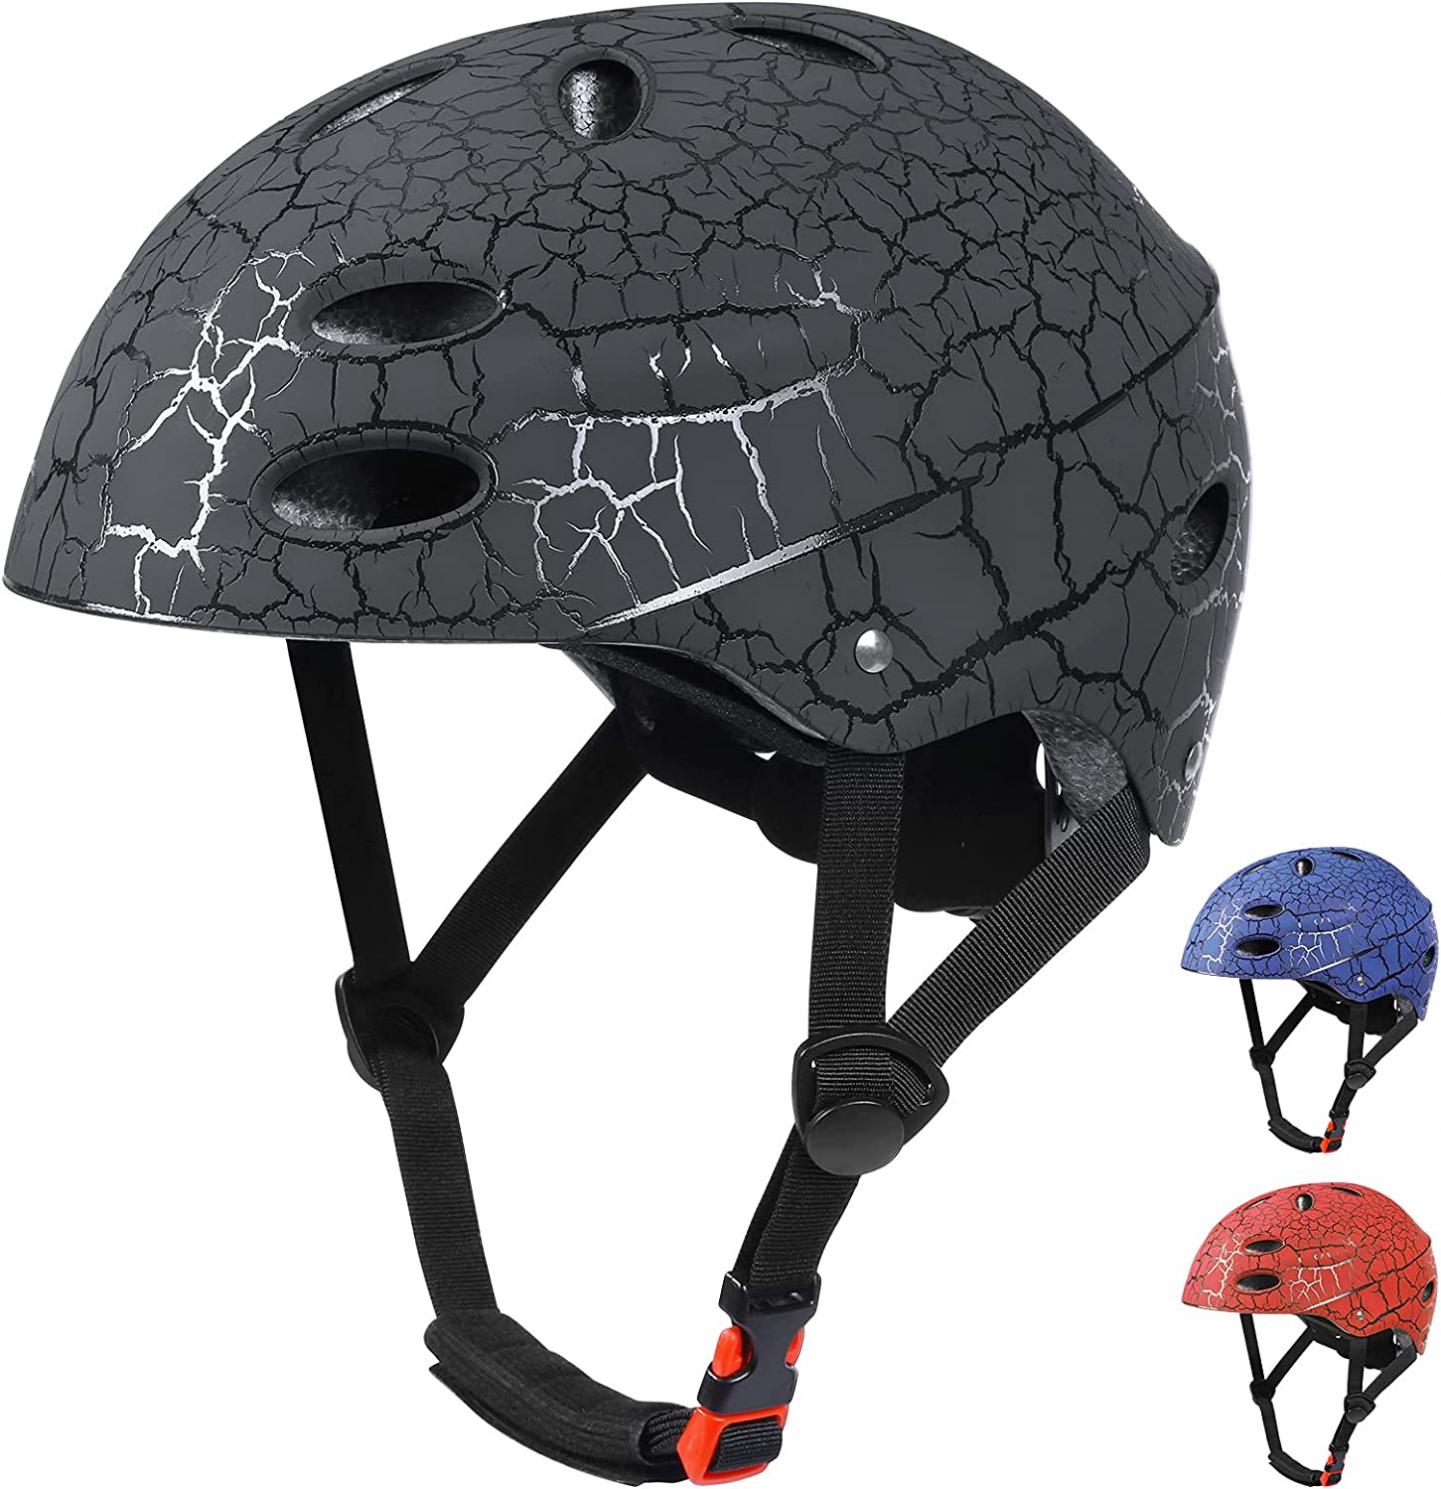 Skateboard Helmet Kids, Adjustable Bike Helmet,Breathable ABS Hard Shell Cycling Helmet for Multi-Sport Scooter Roller Skate BMX Boys Girls Ages 5-12